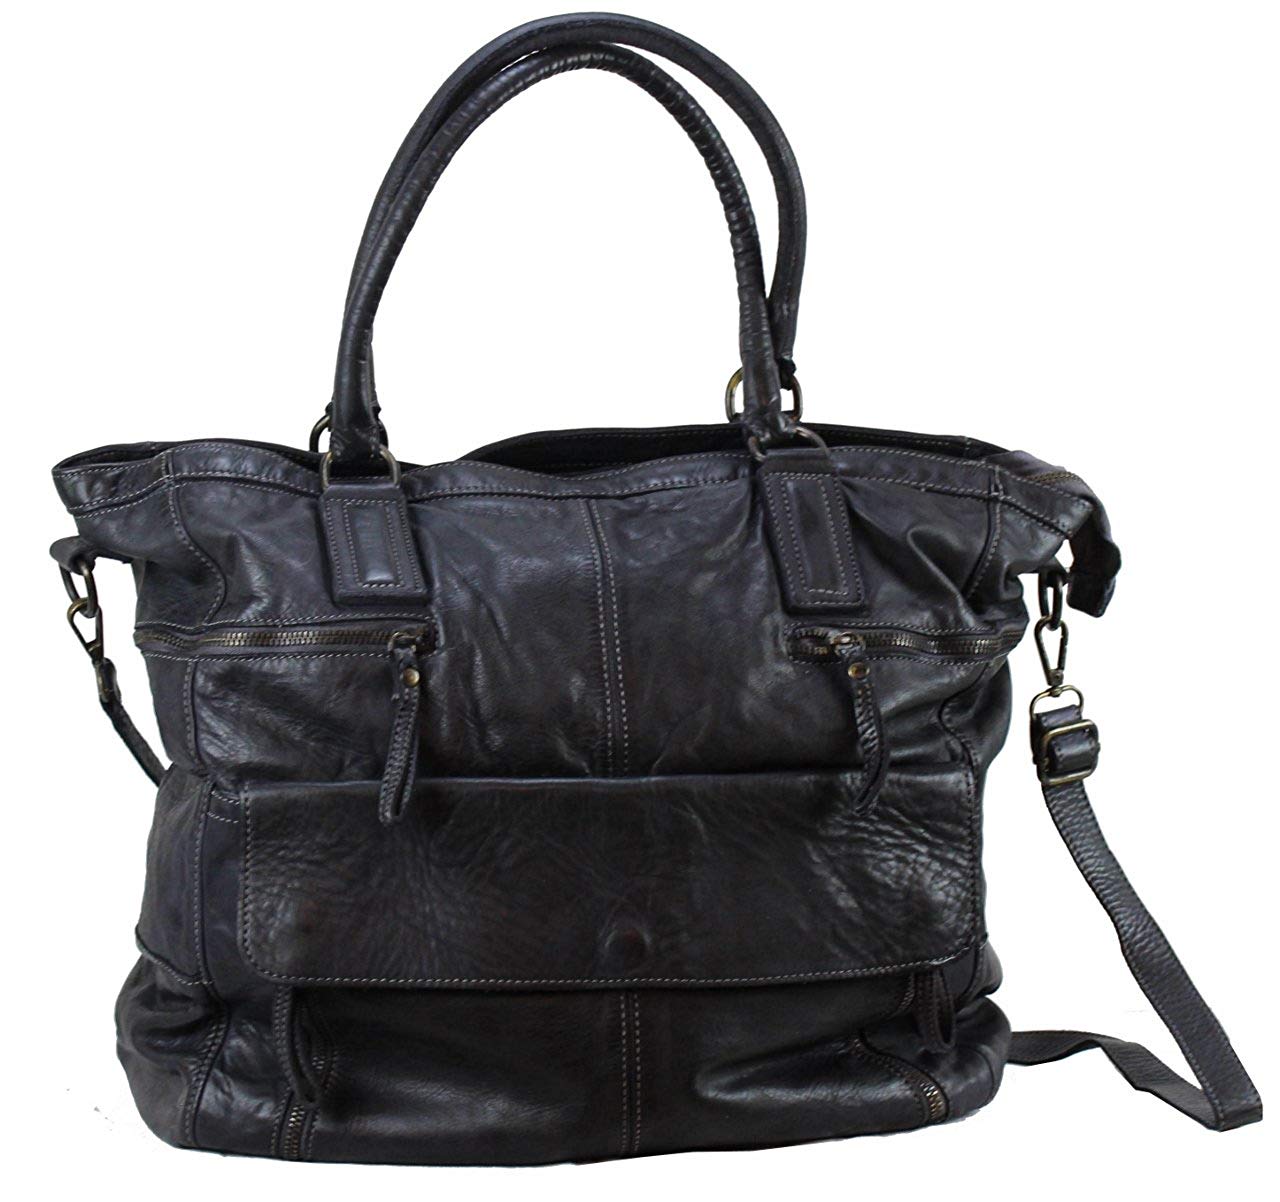 BZNA Bag Boney nero Italy Designer Damen Handtasche Schultertasche Tasche Leder Shopper Neu